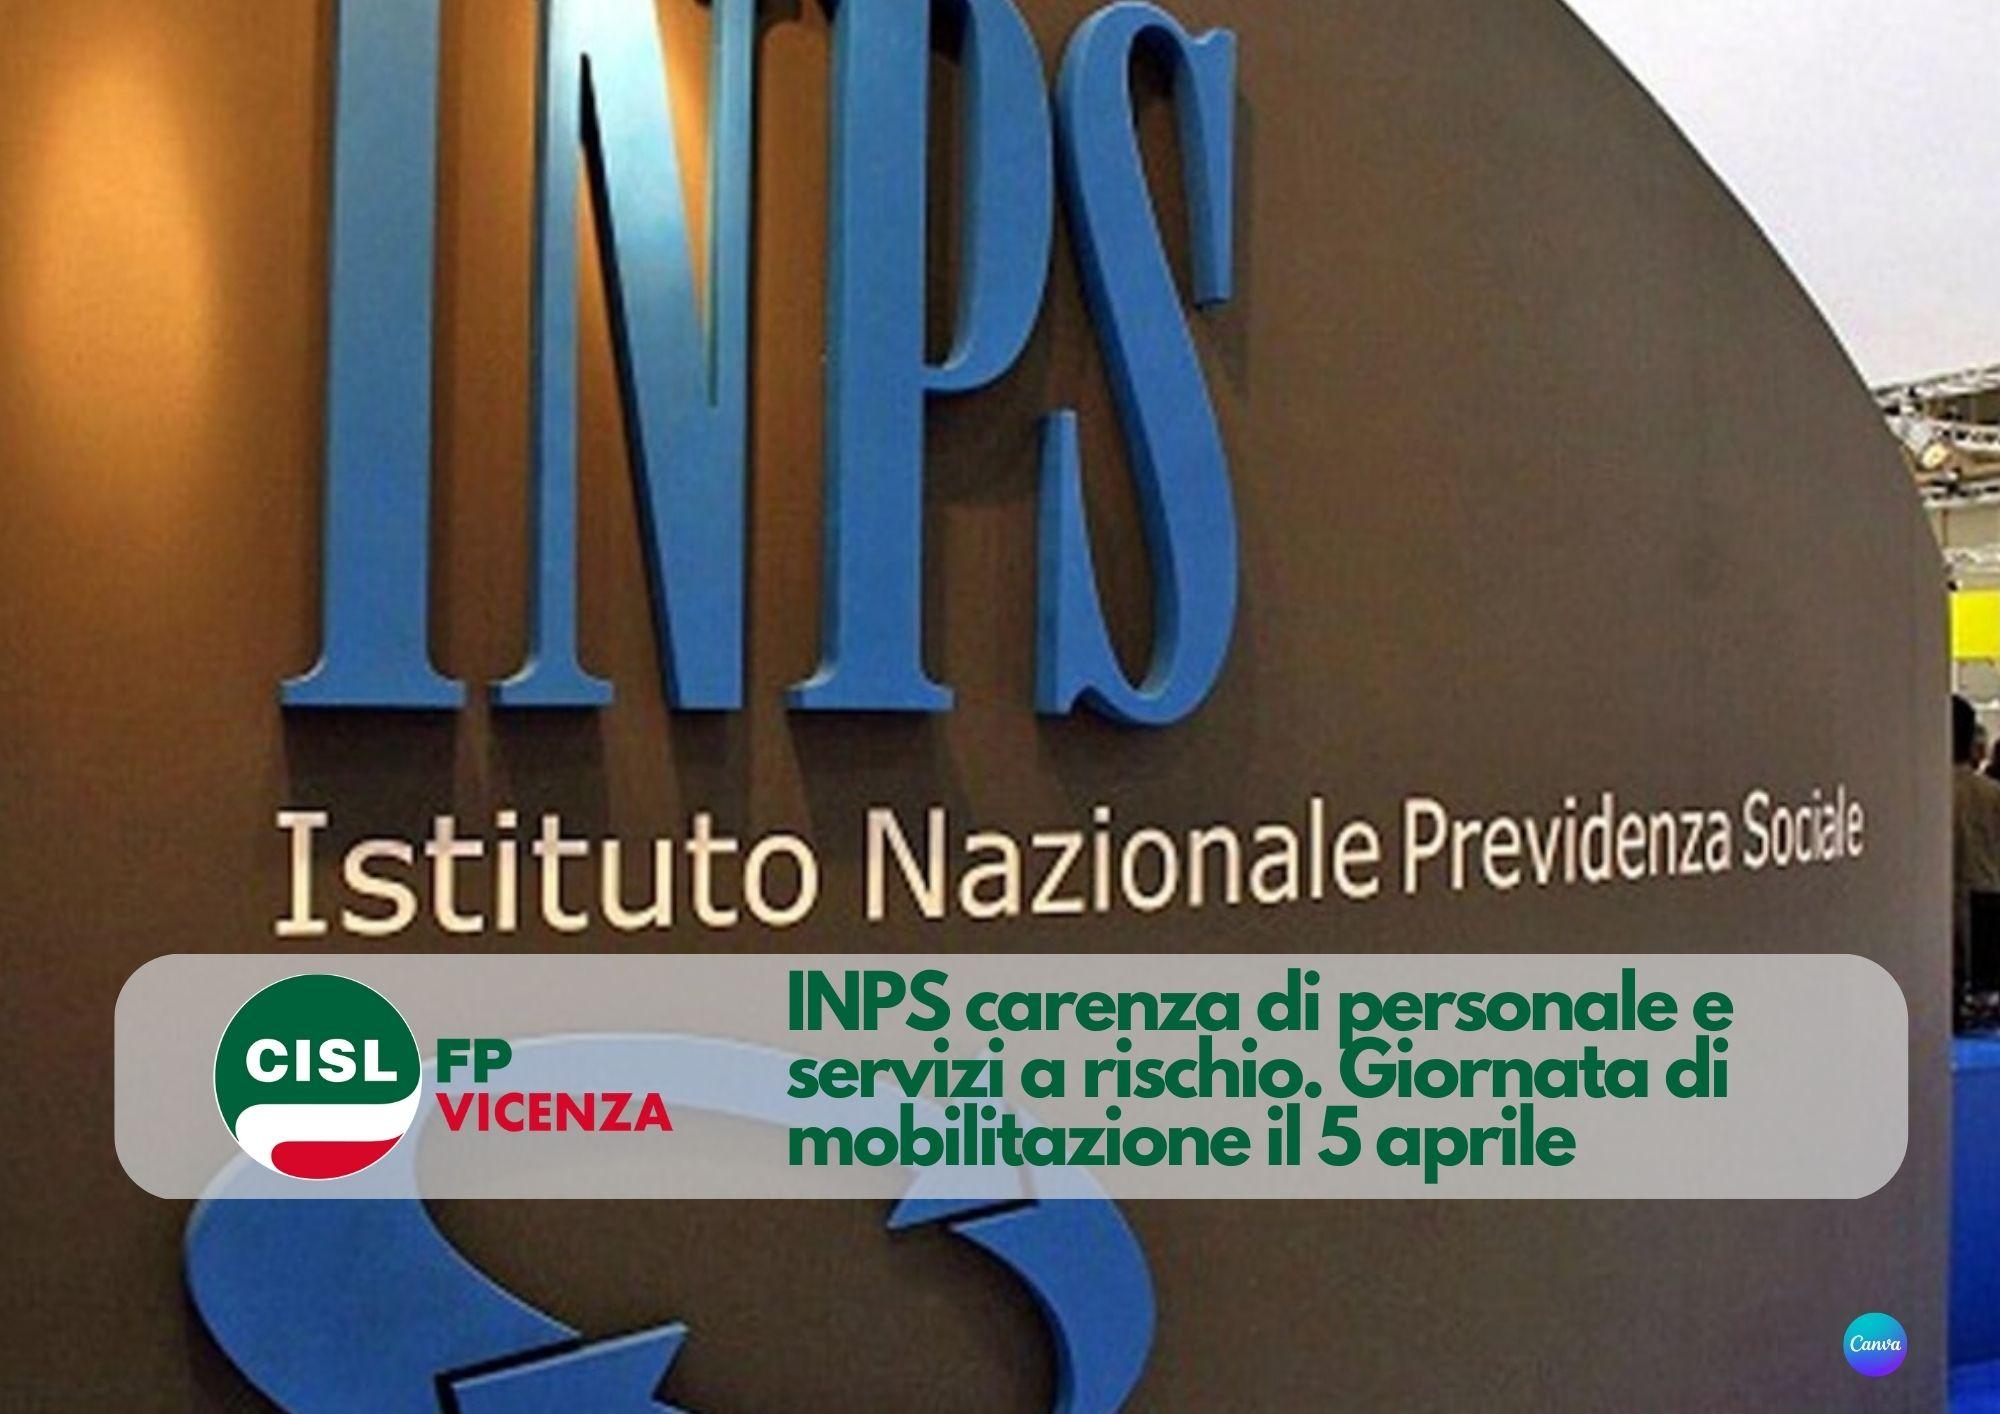 CISL FP Vicenza. INPS carenza di personale e servizi a rischio. il 5 aprile giornata di mobilitazione in Veneto